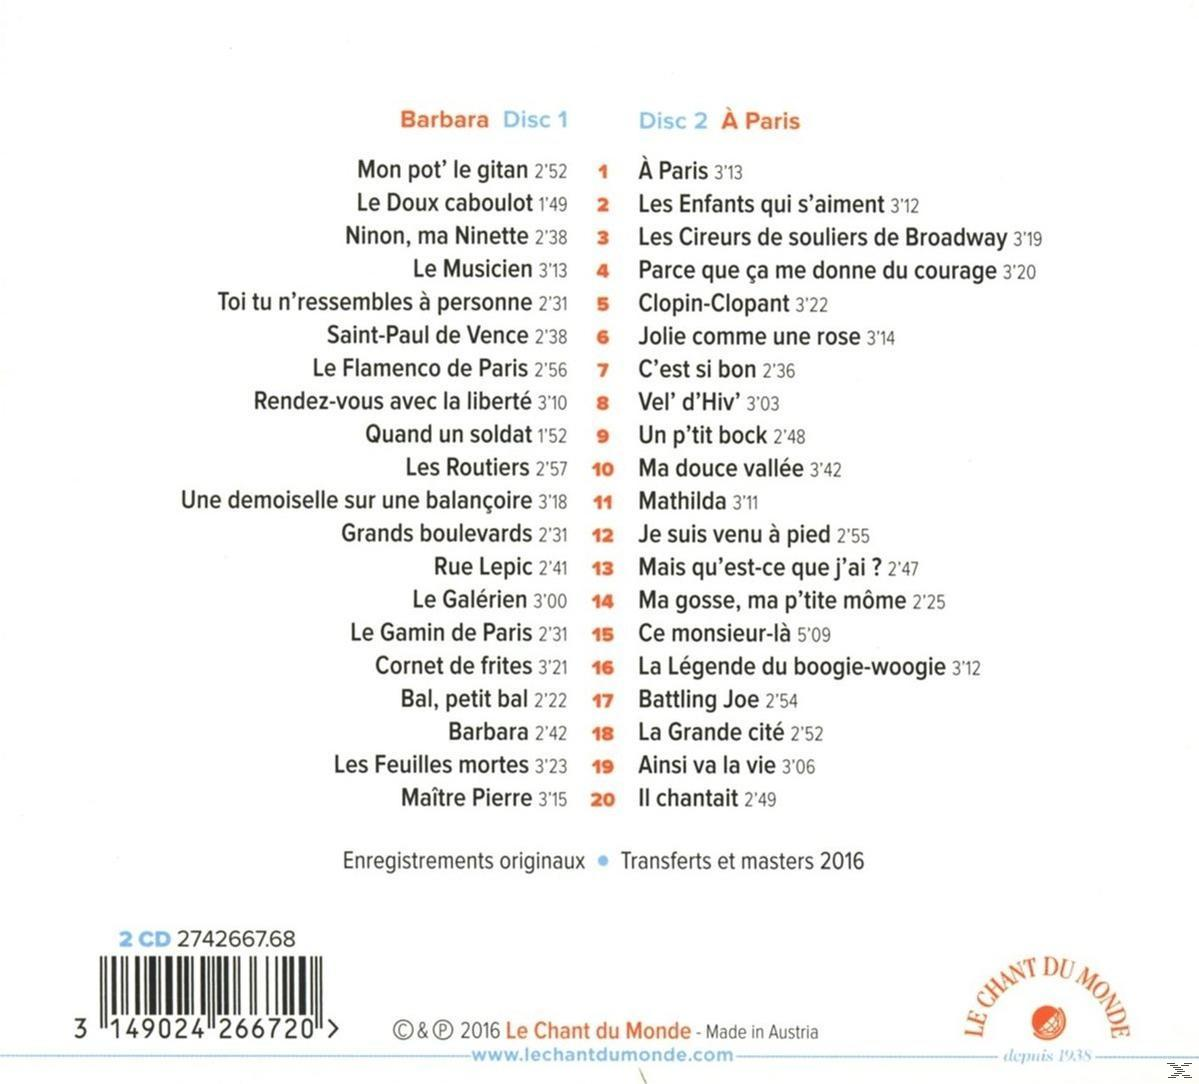 Yves Montand - Barbara (CD) 